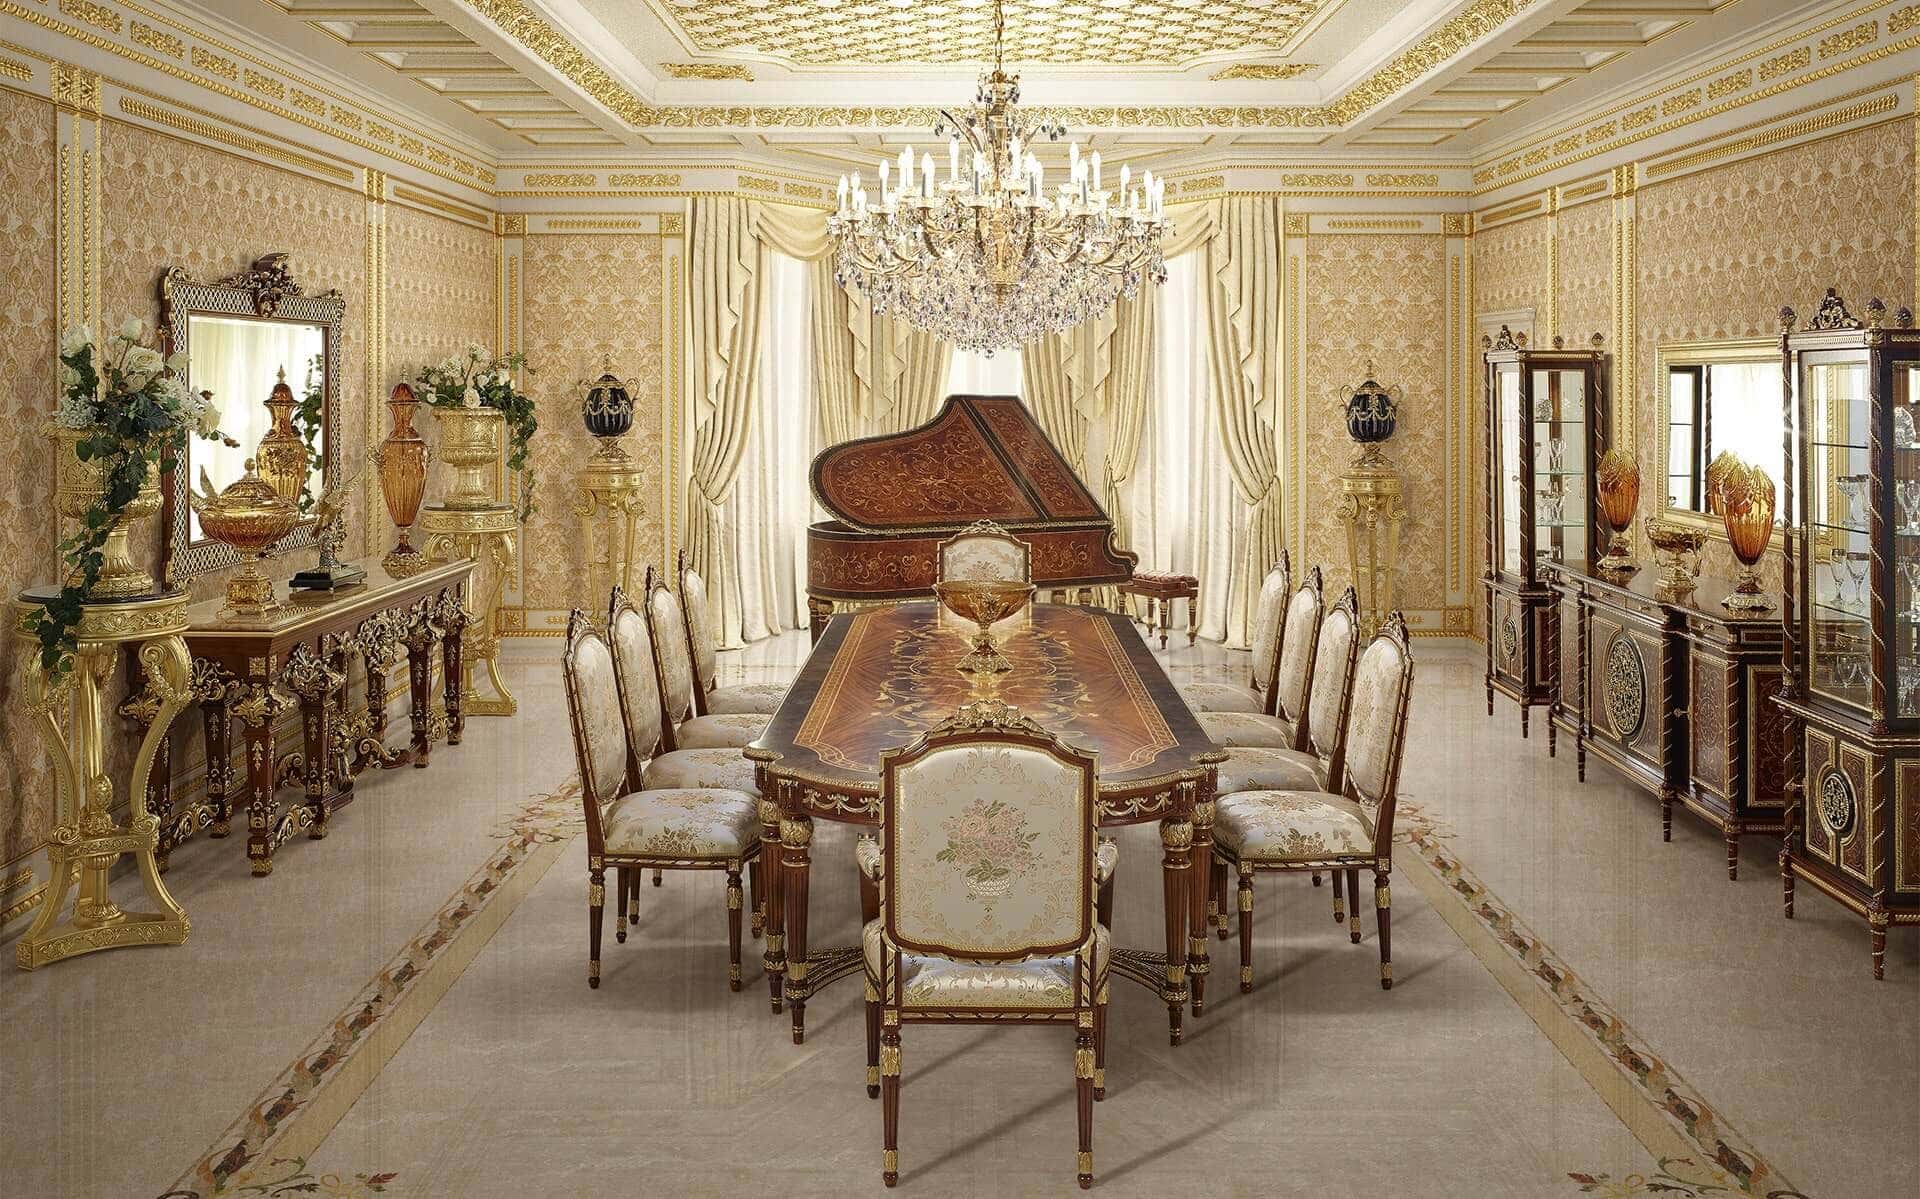 meubles classiques haut de gamme de qualité précieuse fabriqués en Italie de style empire: table à manger élégante, chaises et fauteuils majestueux, vitrines et buffet sur mesure. Piano de luxe 